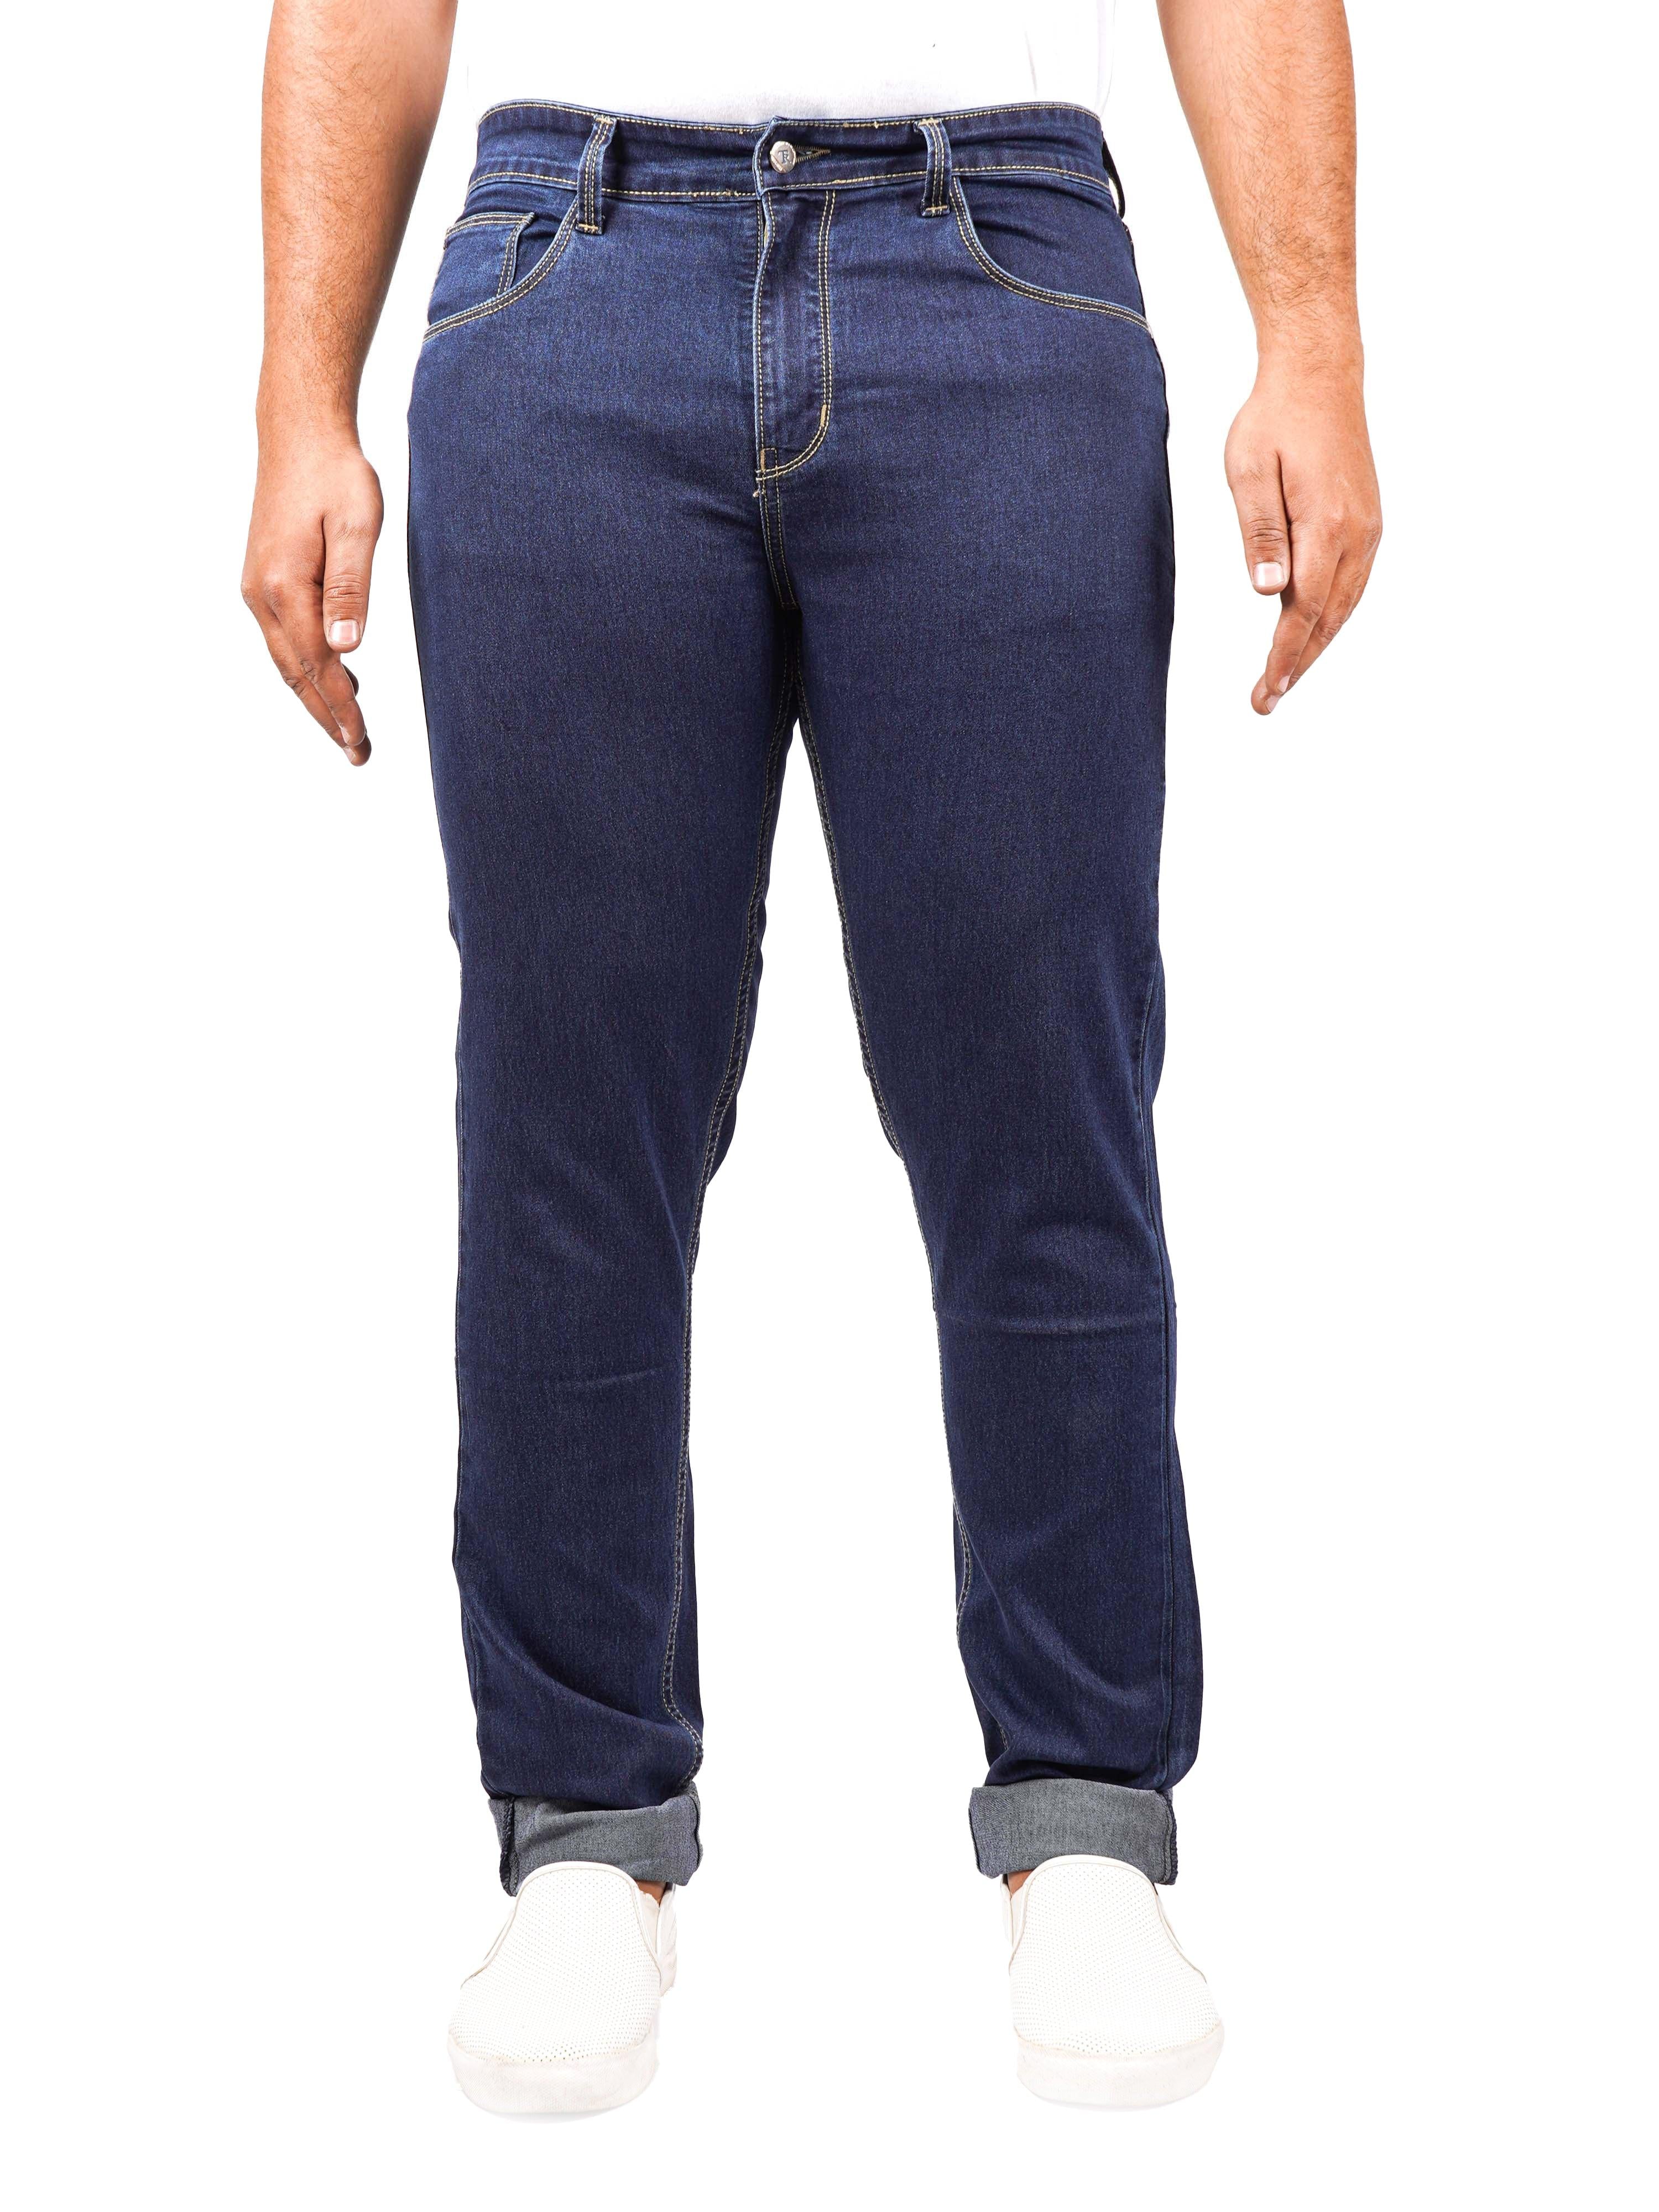 TRIGGER PLUS Men's Regular Fit Jeans - Blue - Triggerjeans